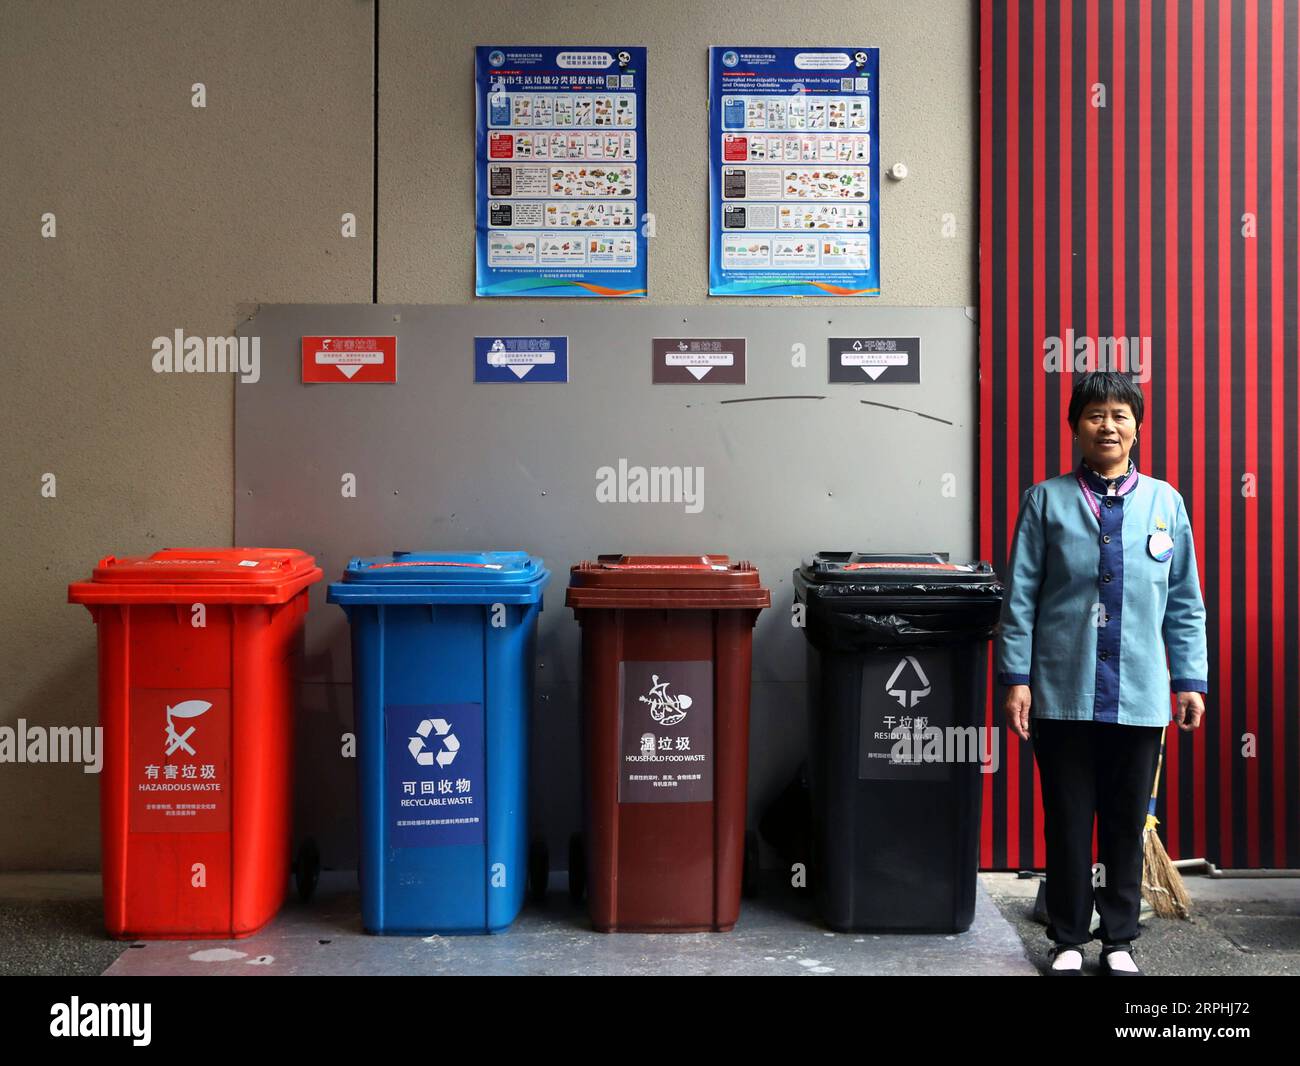 191110 -- SHANGHAI, 10. November 2019 -- Jiang Huiling, ein Mitarbeiter, der für die Wartung von Mülltonnen verantwortlich ist, steht an einem Müllsortierstandort während der zweiten China Interntaional Import Expo CIIE in Shanghai, Ostchina, 9. November 2019. Fast 4.000 240-Liter-Mülltonnen wurden für die zweite CIIE ausgerüstet, um die expo umweltfreundlicher zu machen, nachdem Shanghai am 1. Juli eine Reihe von Vorschriften zur Müllsortierung und zum Recycling von Hausmüll verabschiedet hatte. CIIECHINA-SHANGHAI-CIIE-GARBAGE SORTINGCN LiuxYing PUBLICATIONxNOTxINxCHN Stockfoto